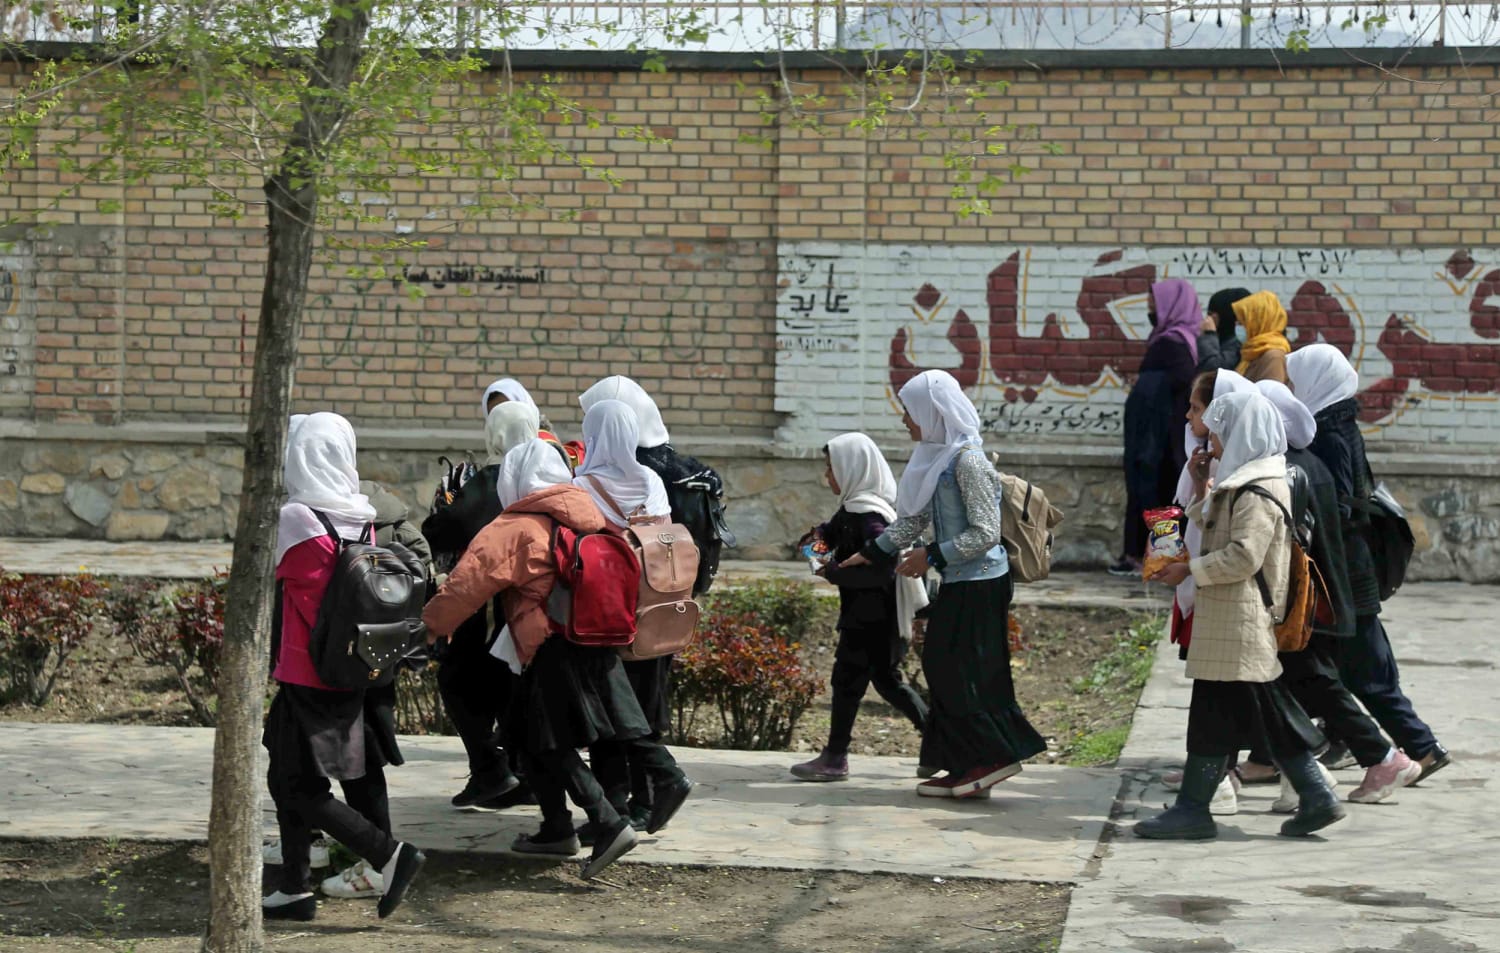 अफगानिस्तान में 80 स्कूली छात्राओं को स्कूलों में दिया जहर, अब सभी...80 schoolgirls were poisoned in schools in Afghanistan, now all...